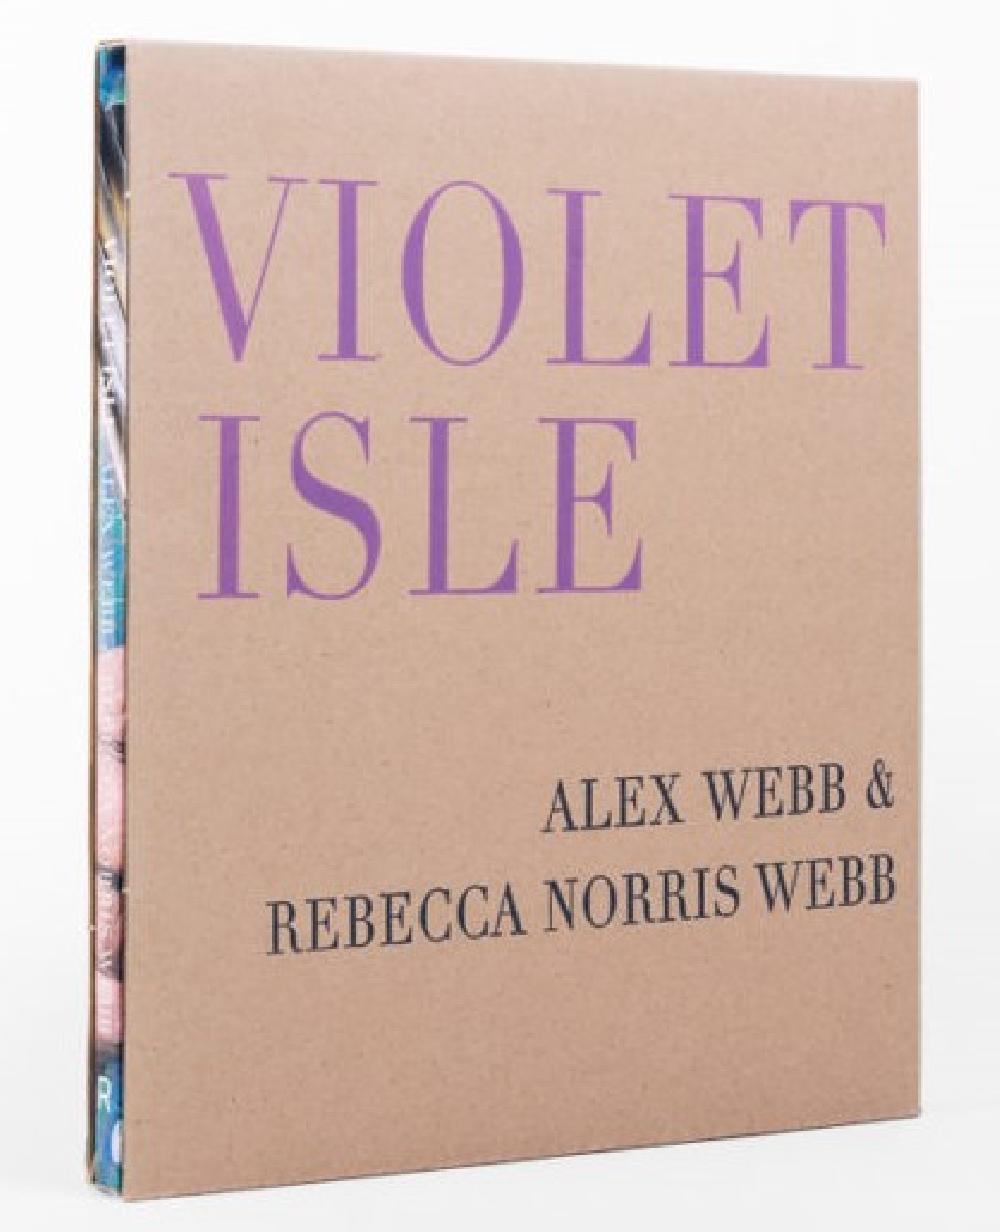 Alex Webb & Rebecca Norris Webb : Violet Isle